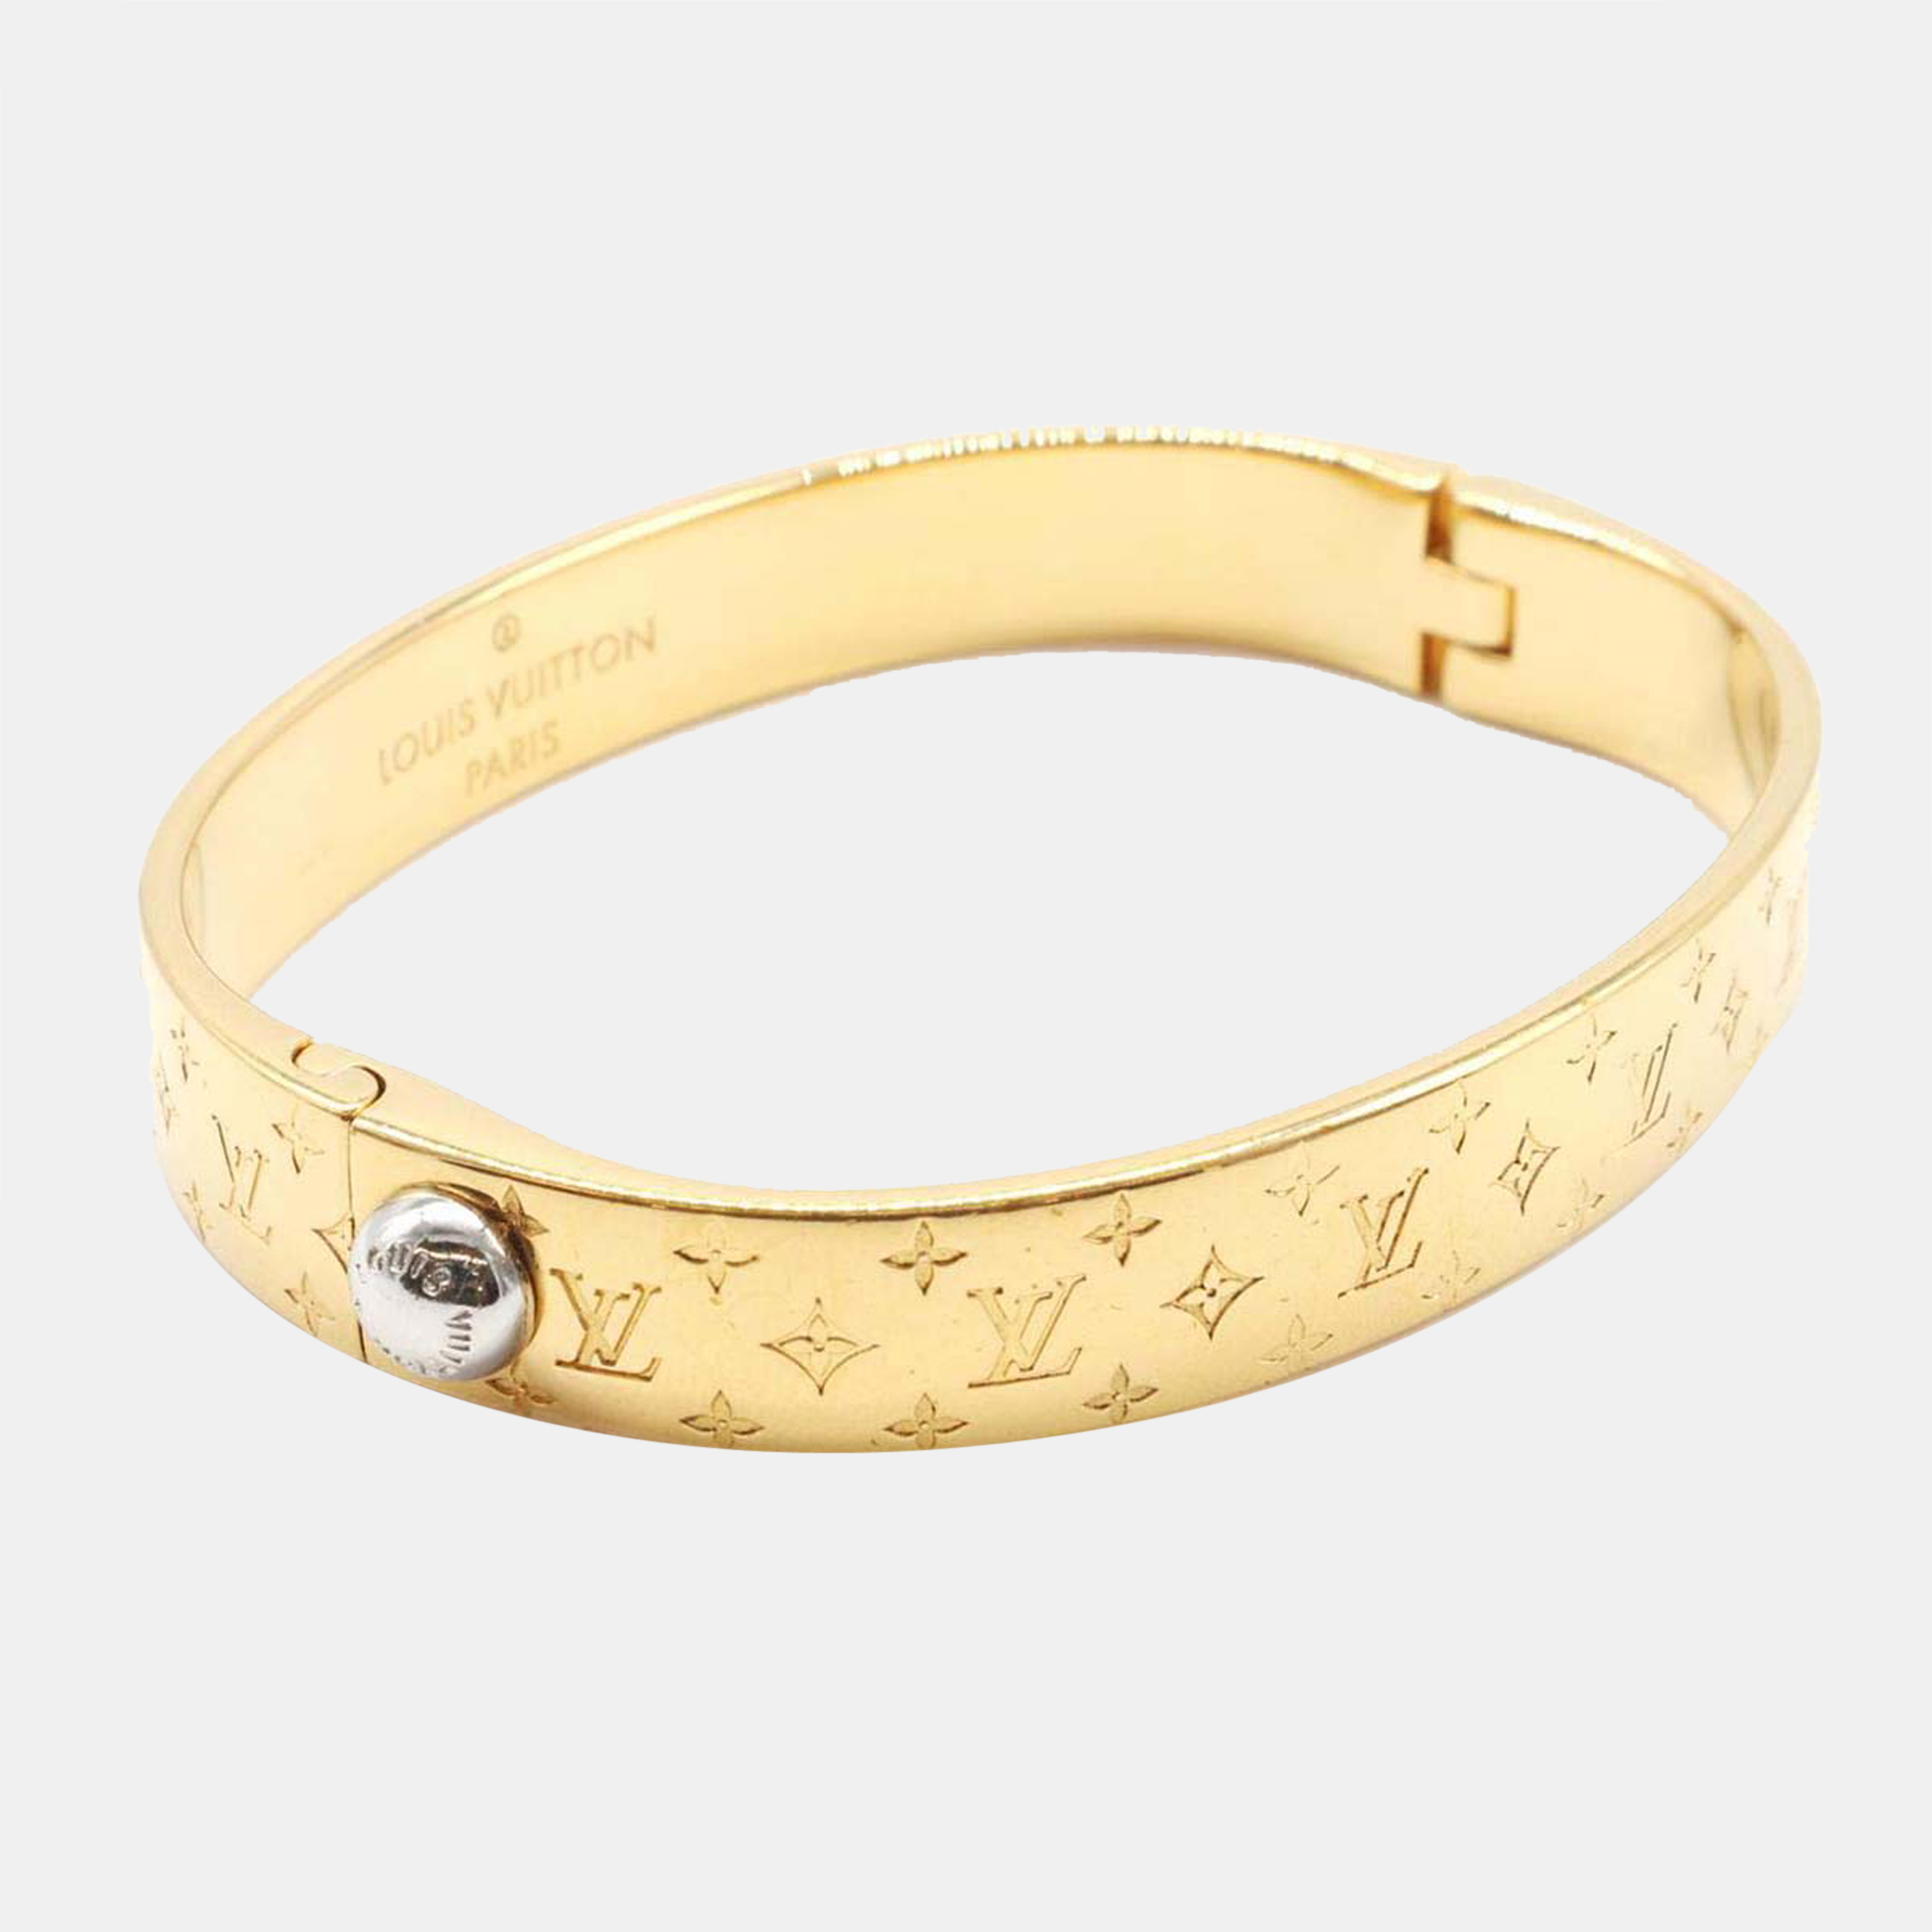 Louis Vuitton Pre-owned Women's Bracelet - Beige - One Size